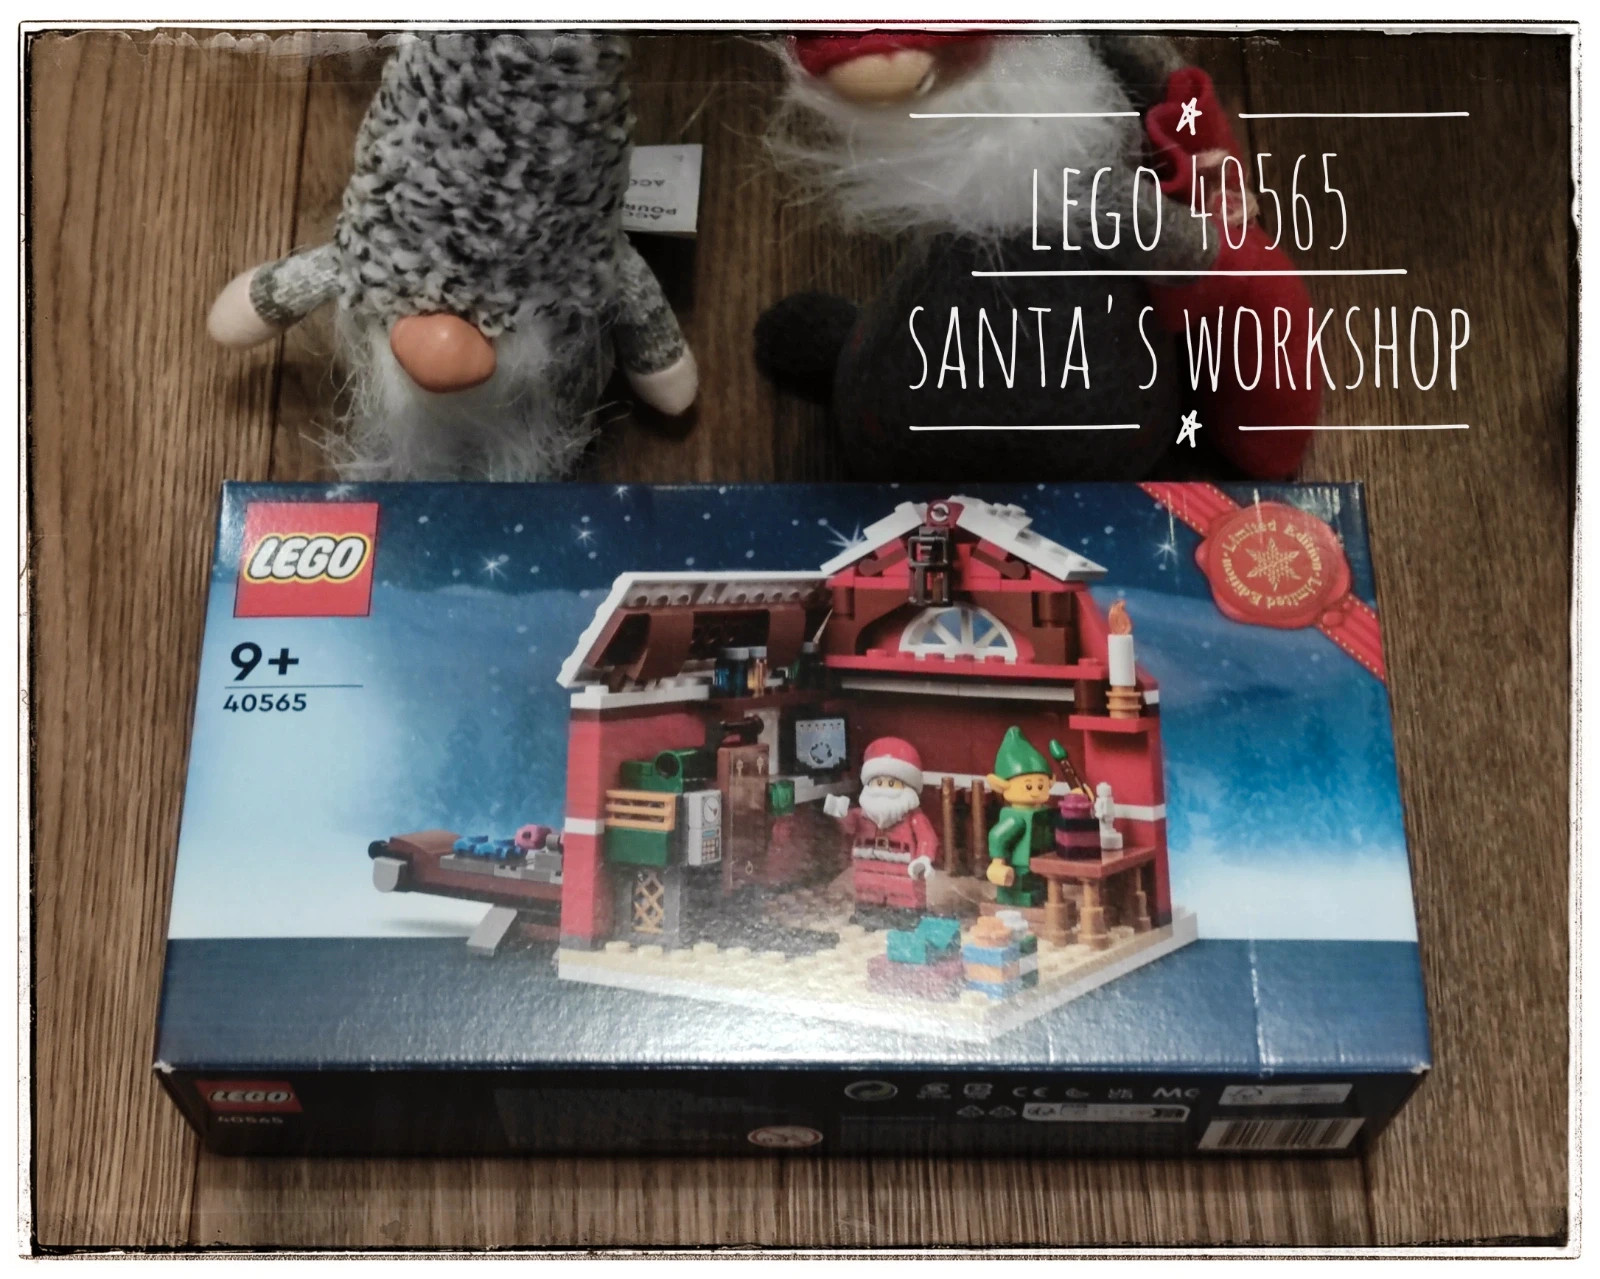 LEGO Limited Edition 40565 Santa's Workshop | Vinted